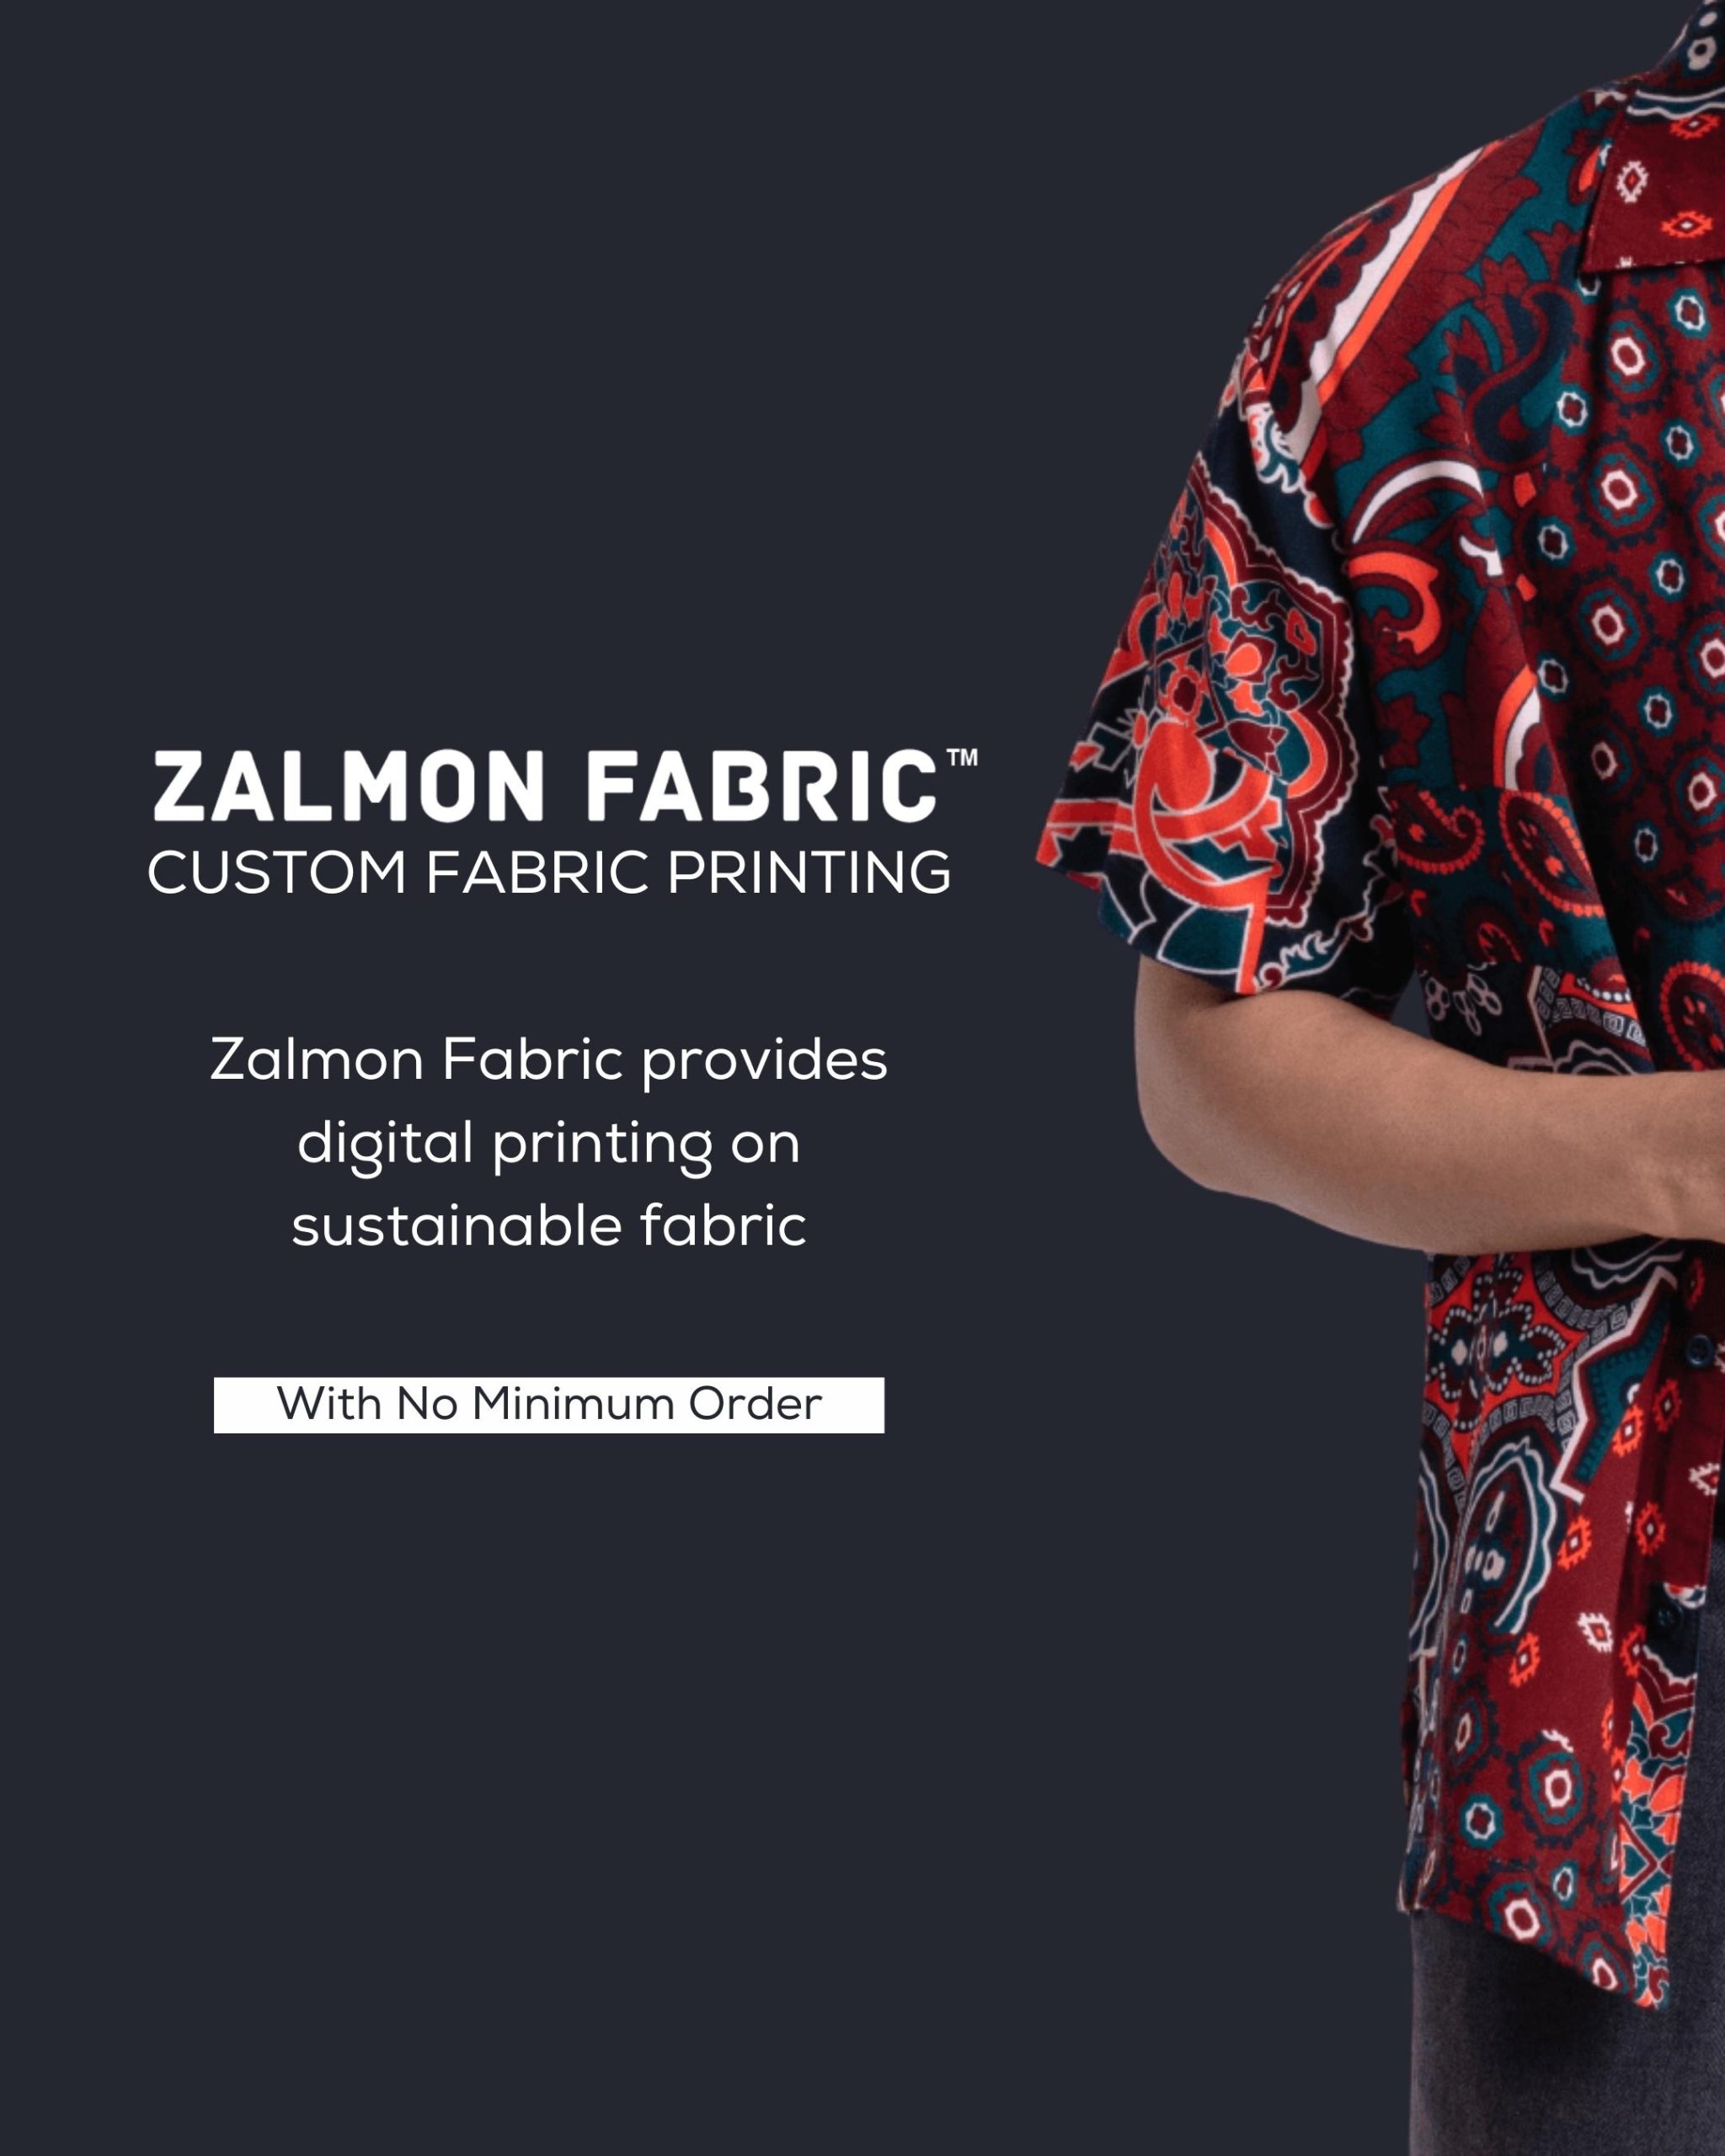 Zalmon Fabric